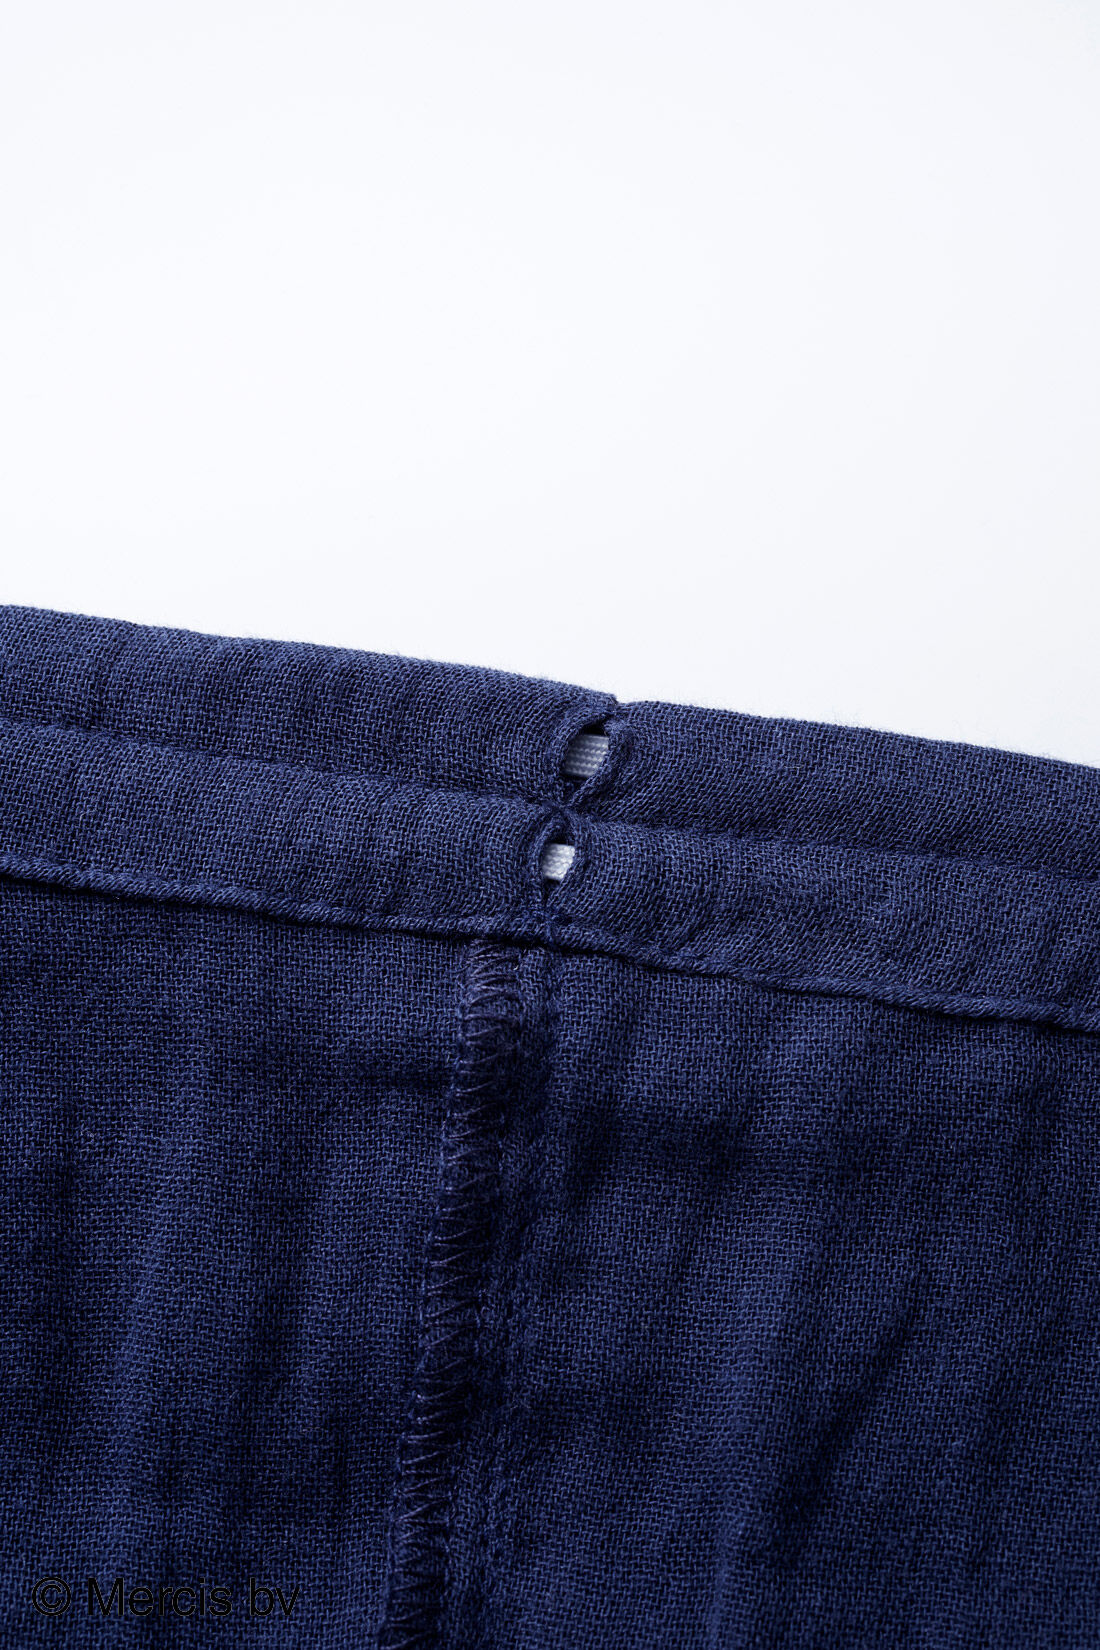 フェリシモMama|リブ イン コンフォート ×miffy　ふわふわダブルガーゼのストライプ半袖キッズセットアップ|パンツのウエスト・裾にはゴム替え口が付いています。